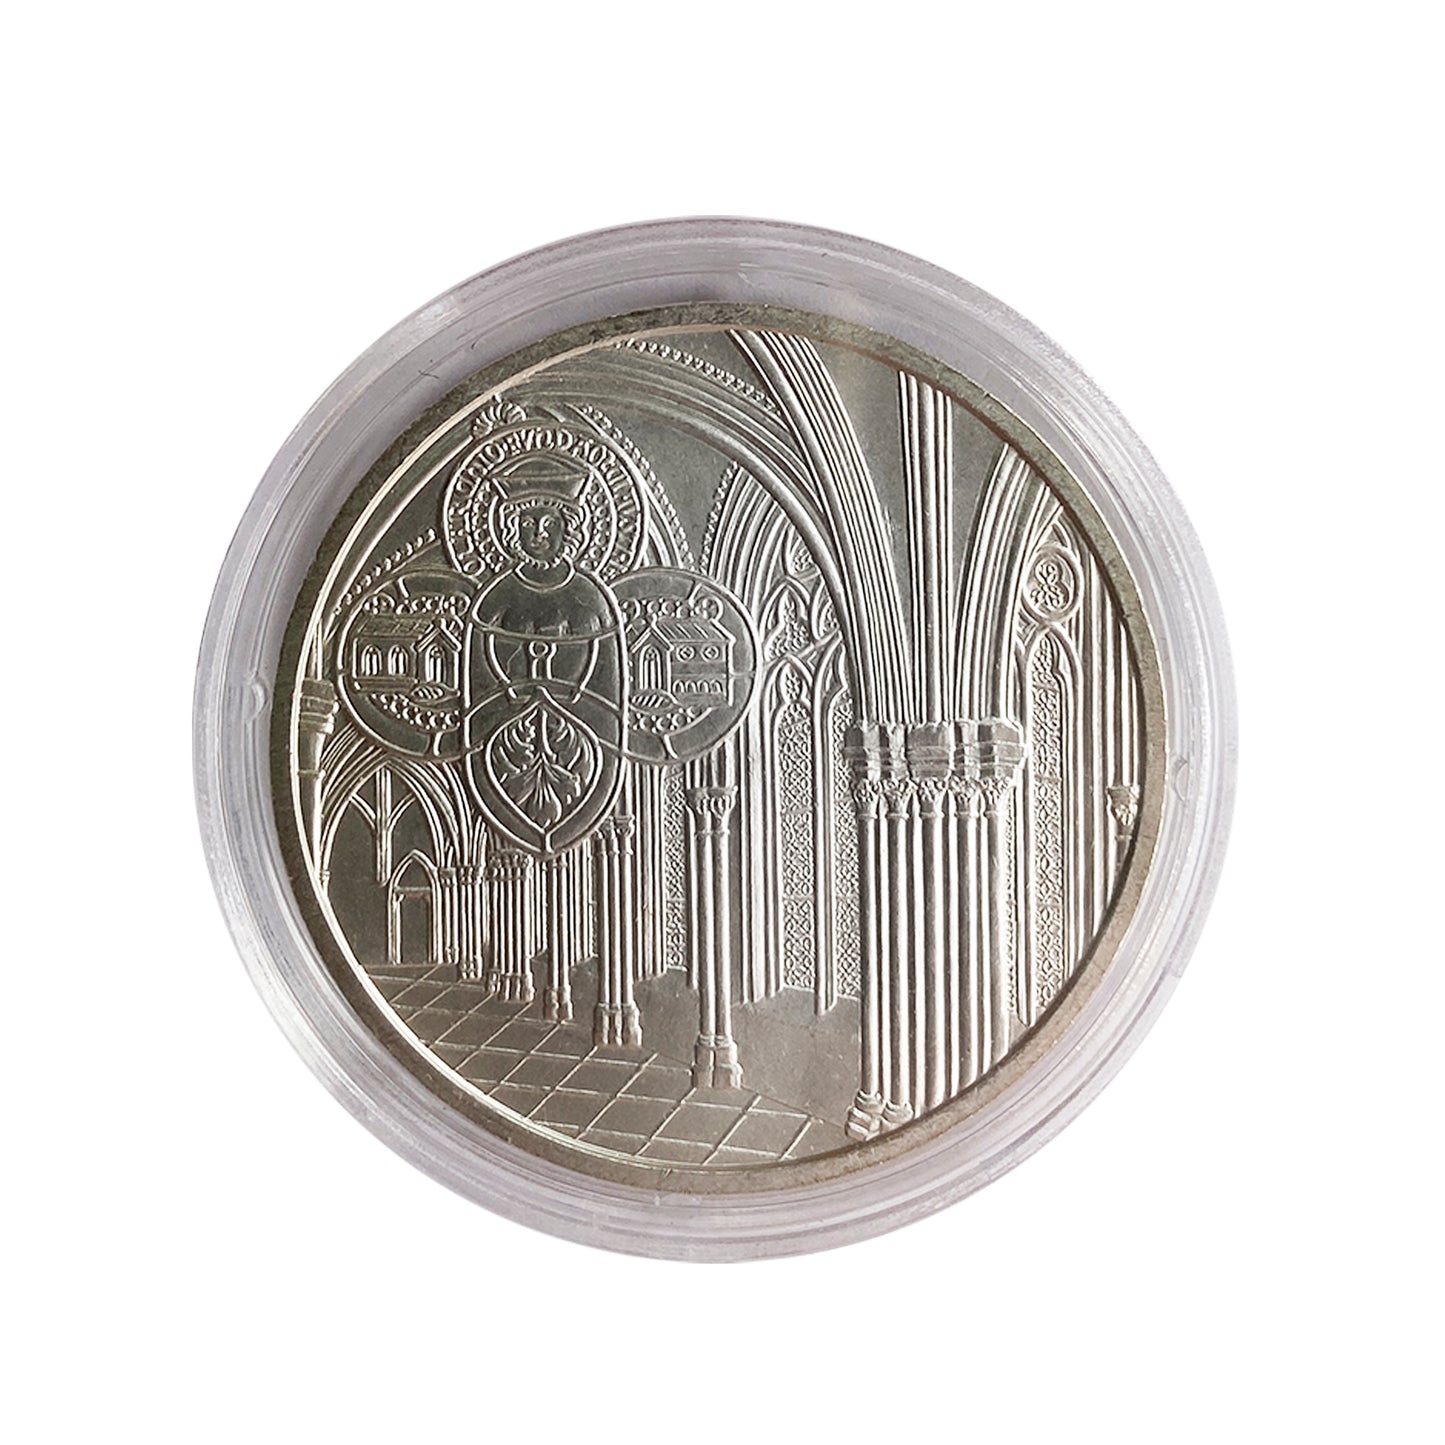 Austria - Moneda 10 euros plata 2008 - Monasterio de Klosterneuburg